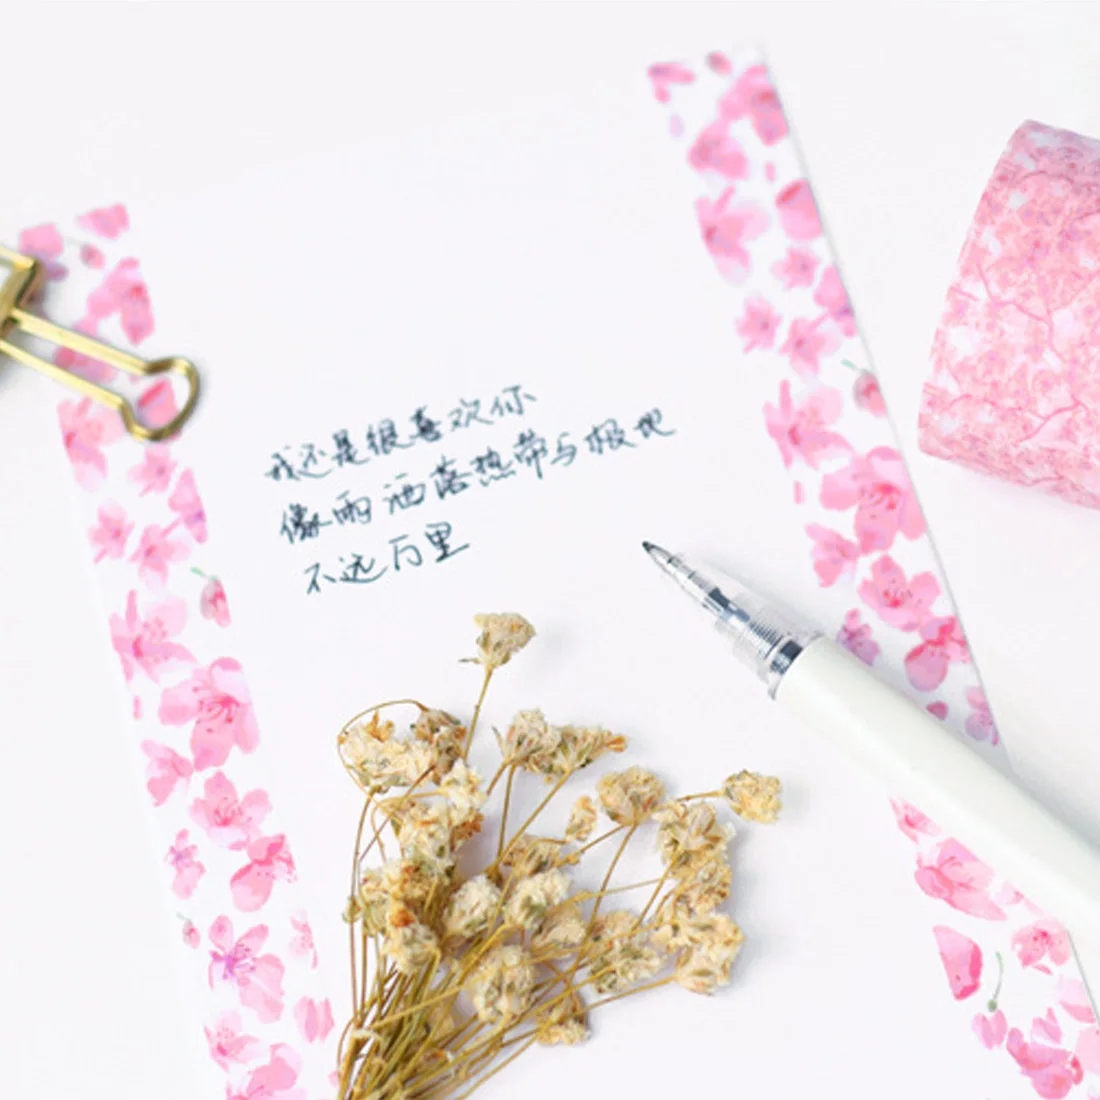 Творческий Cherry Blossom васи ленты DIY Справочник альбом декоративные клейкие ленты Скрапбукинг Стикеры этикетка канцелярские подарки